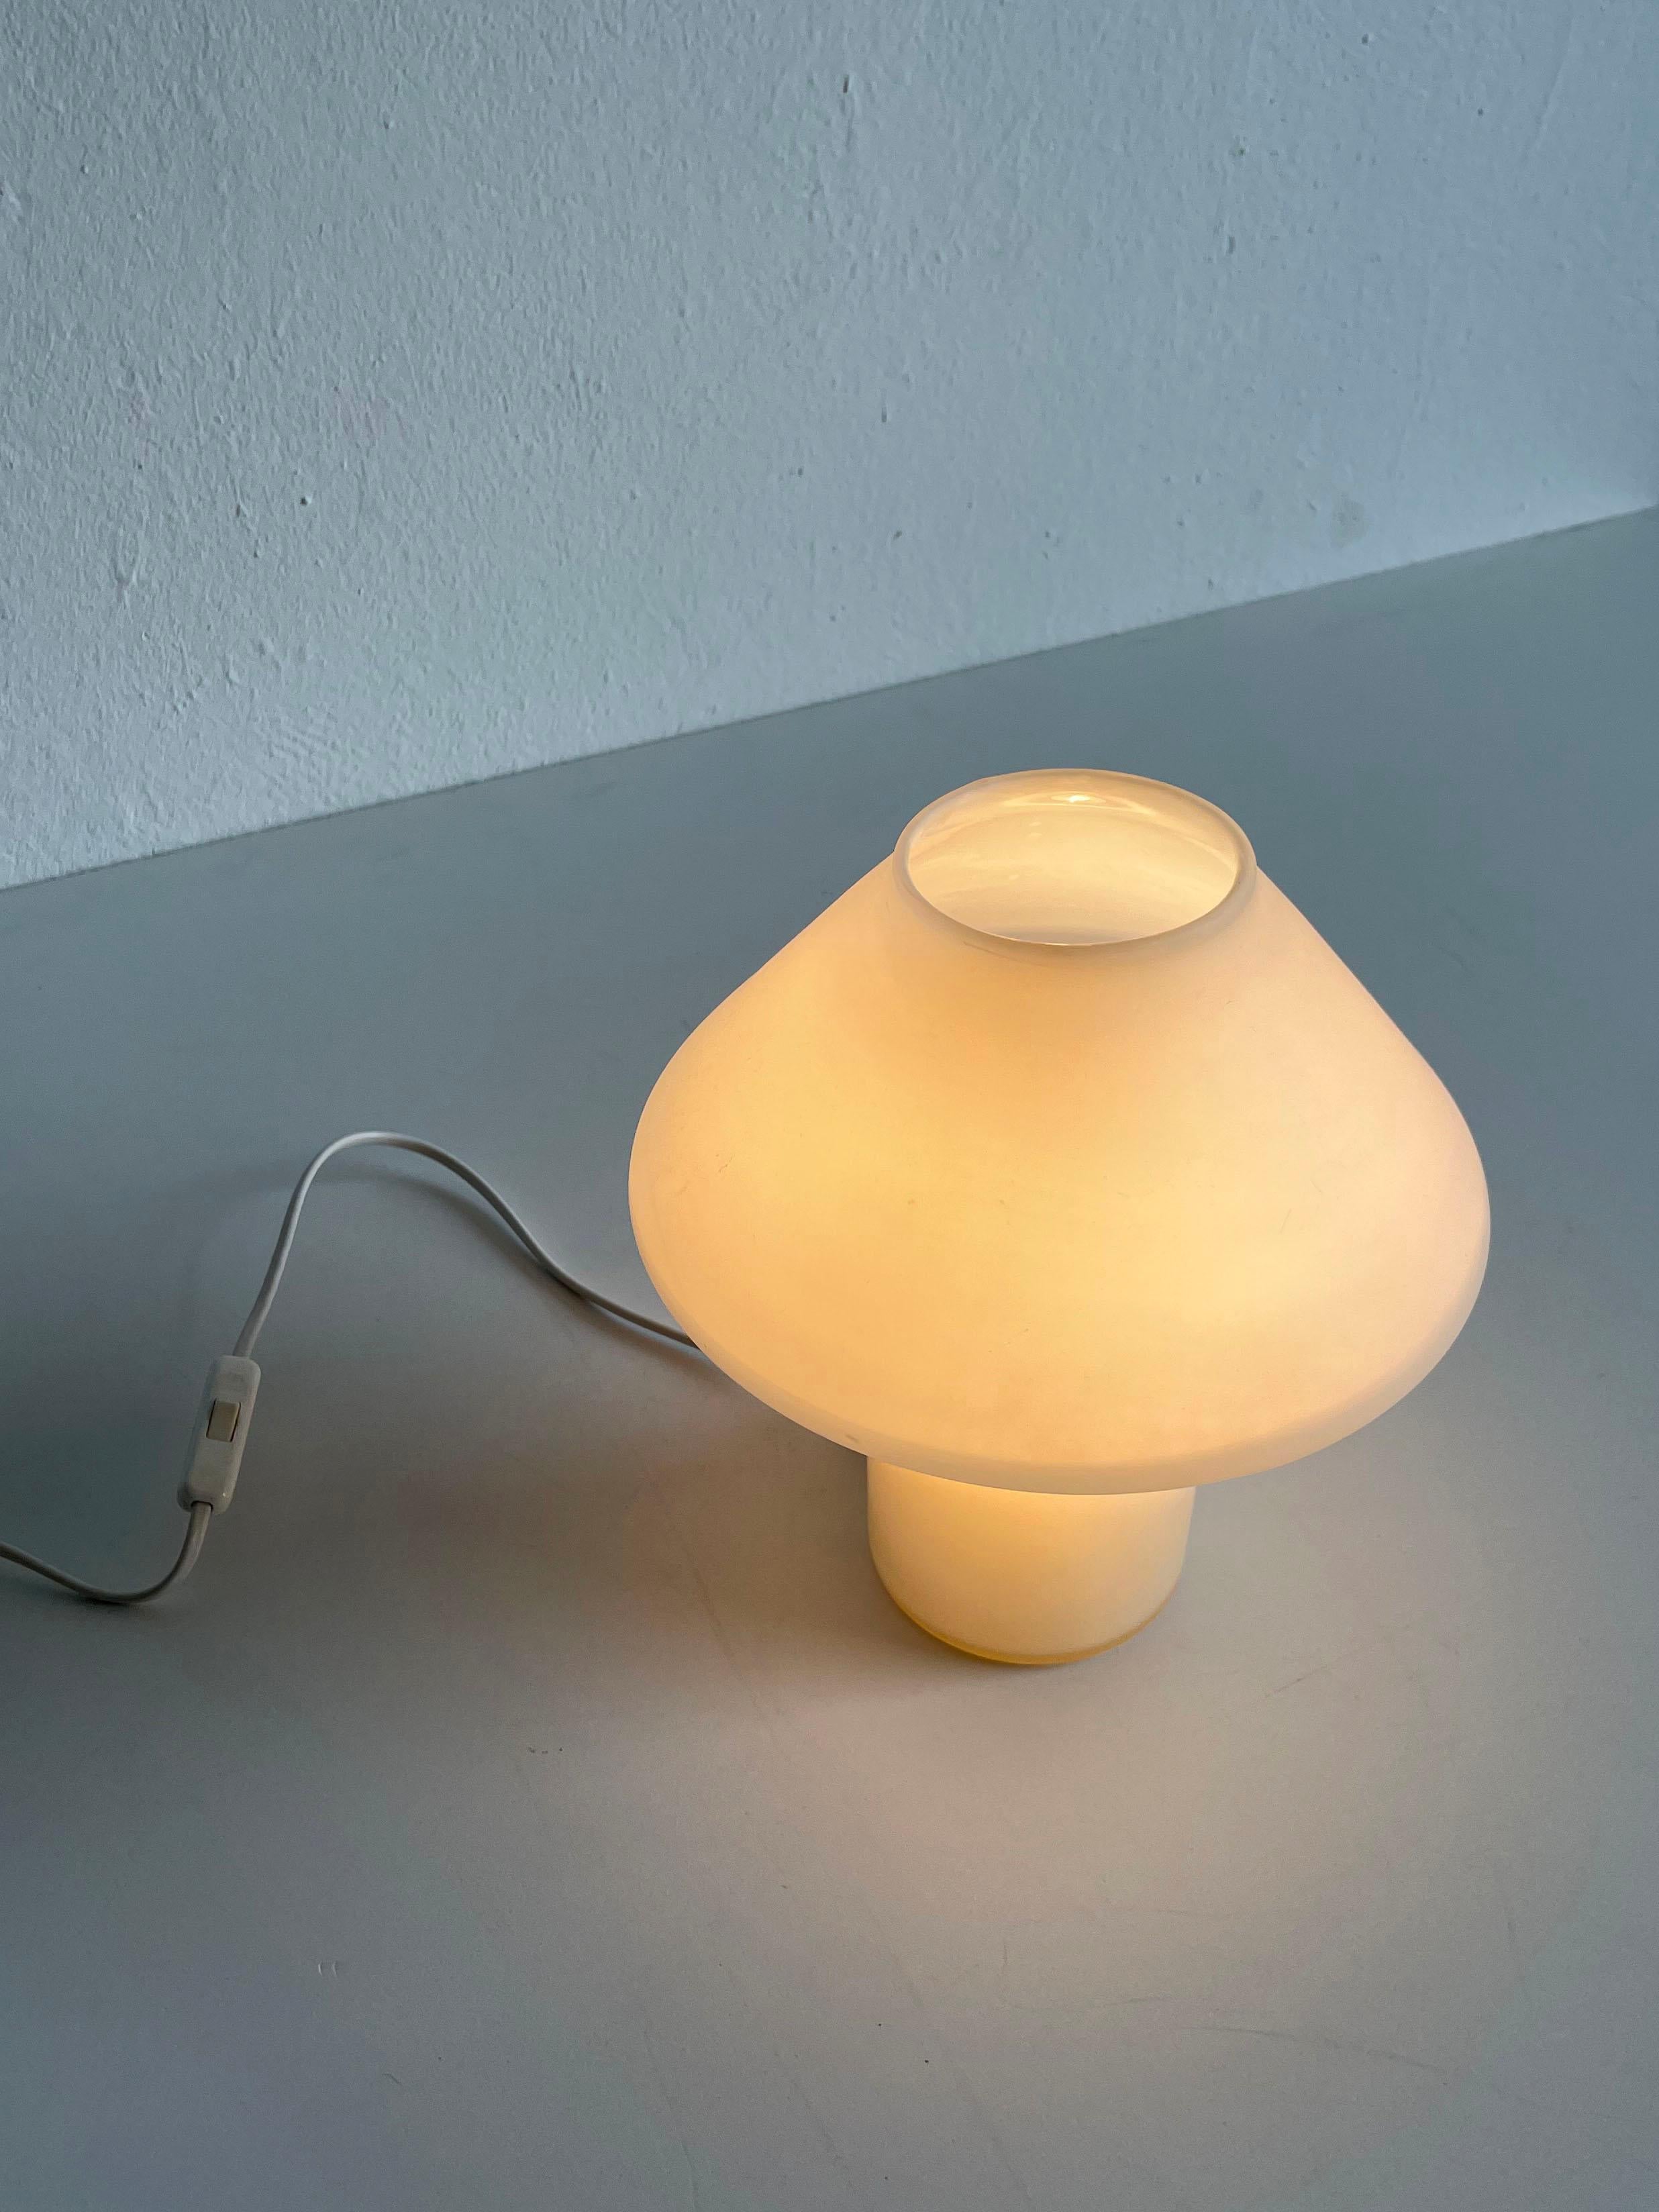 Lampe de table champignon en verre satiné blanc des années 1970, conçue par le fabricant de luminaires néerlandais Hala Zeist.
La lampe a un design supérieur en forme de champignon avec une base cylindrique.

La lampe n'est pas marquée.

Il est